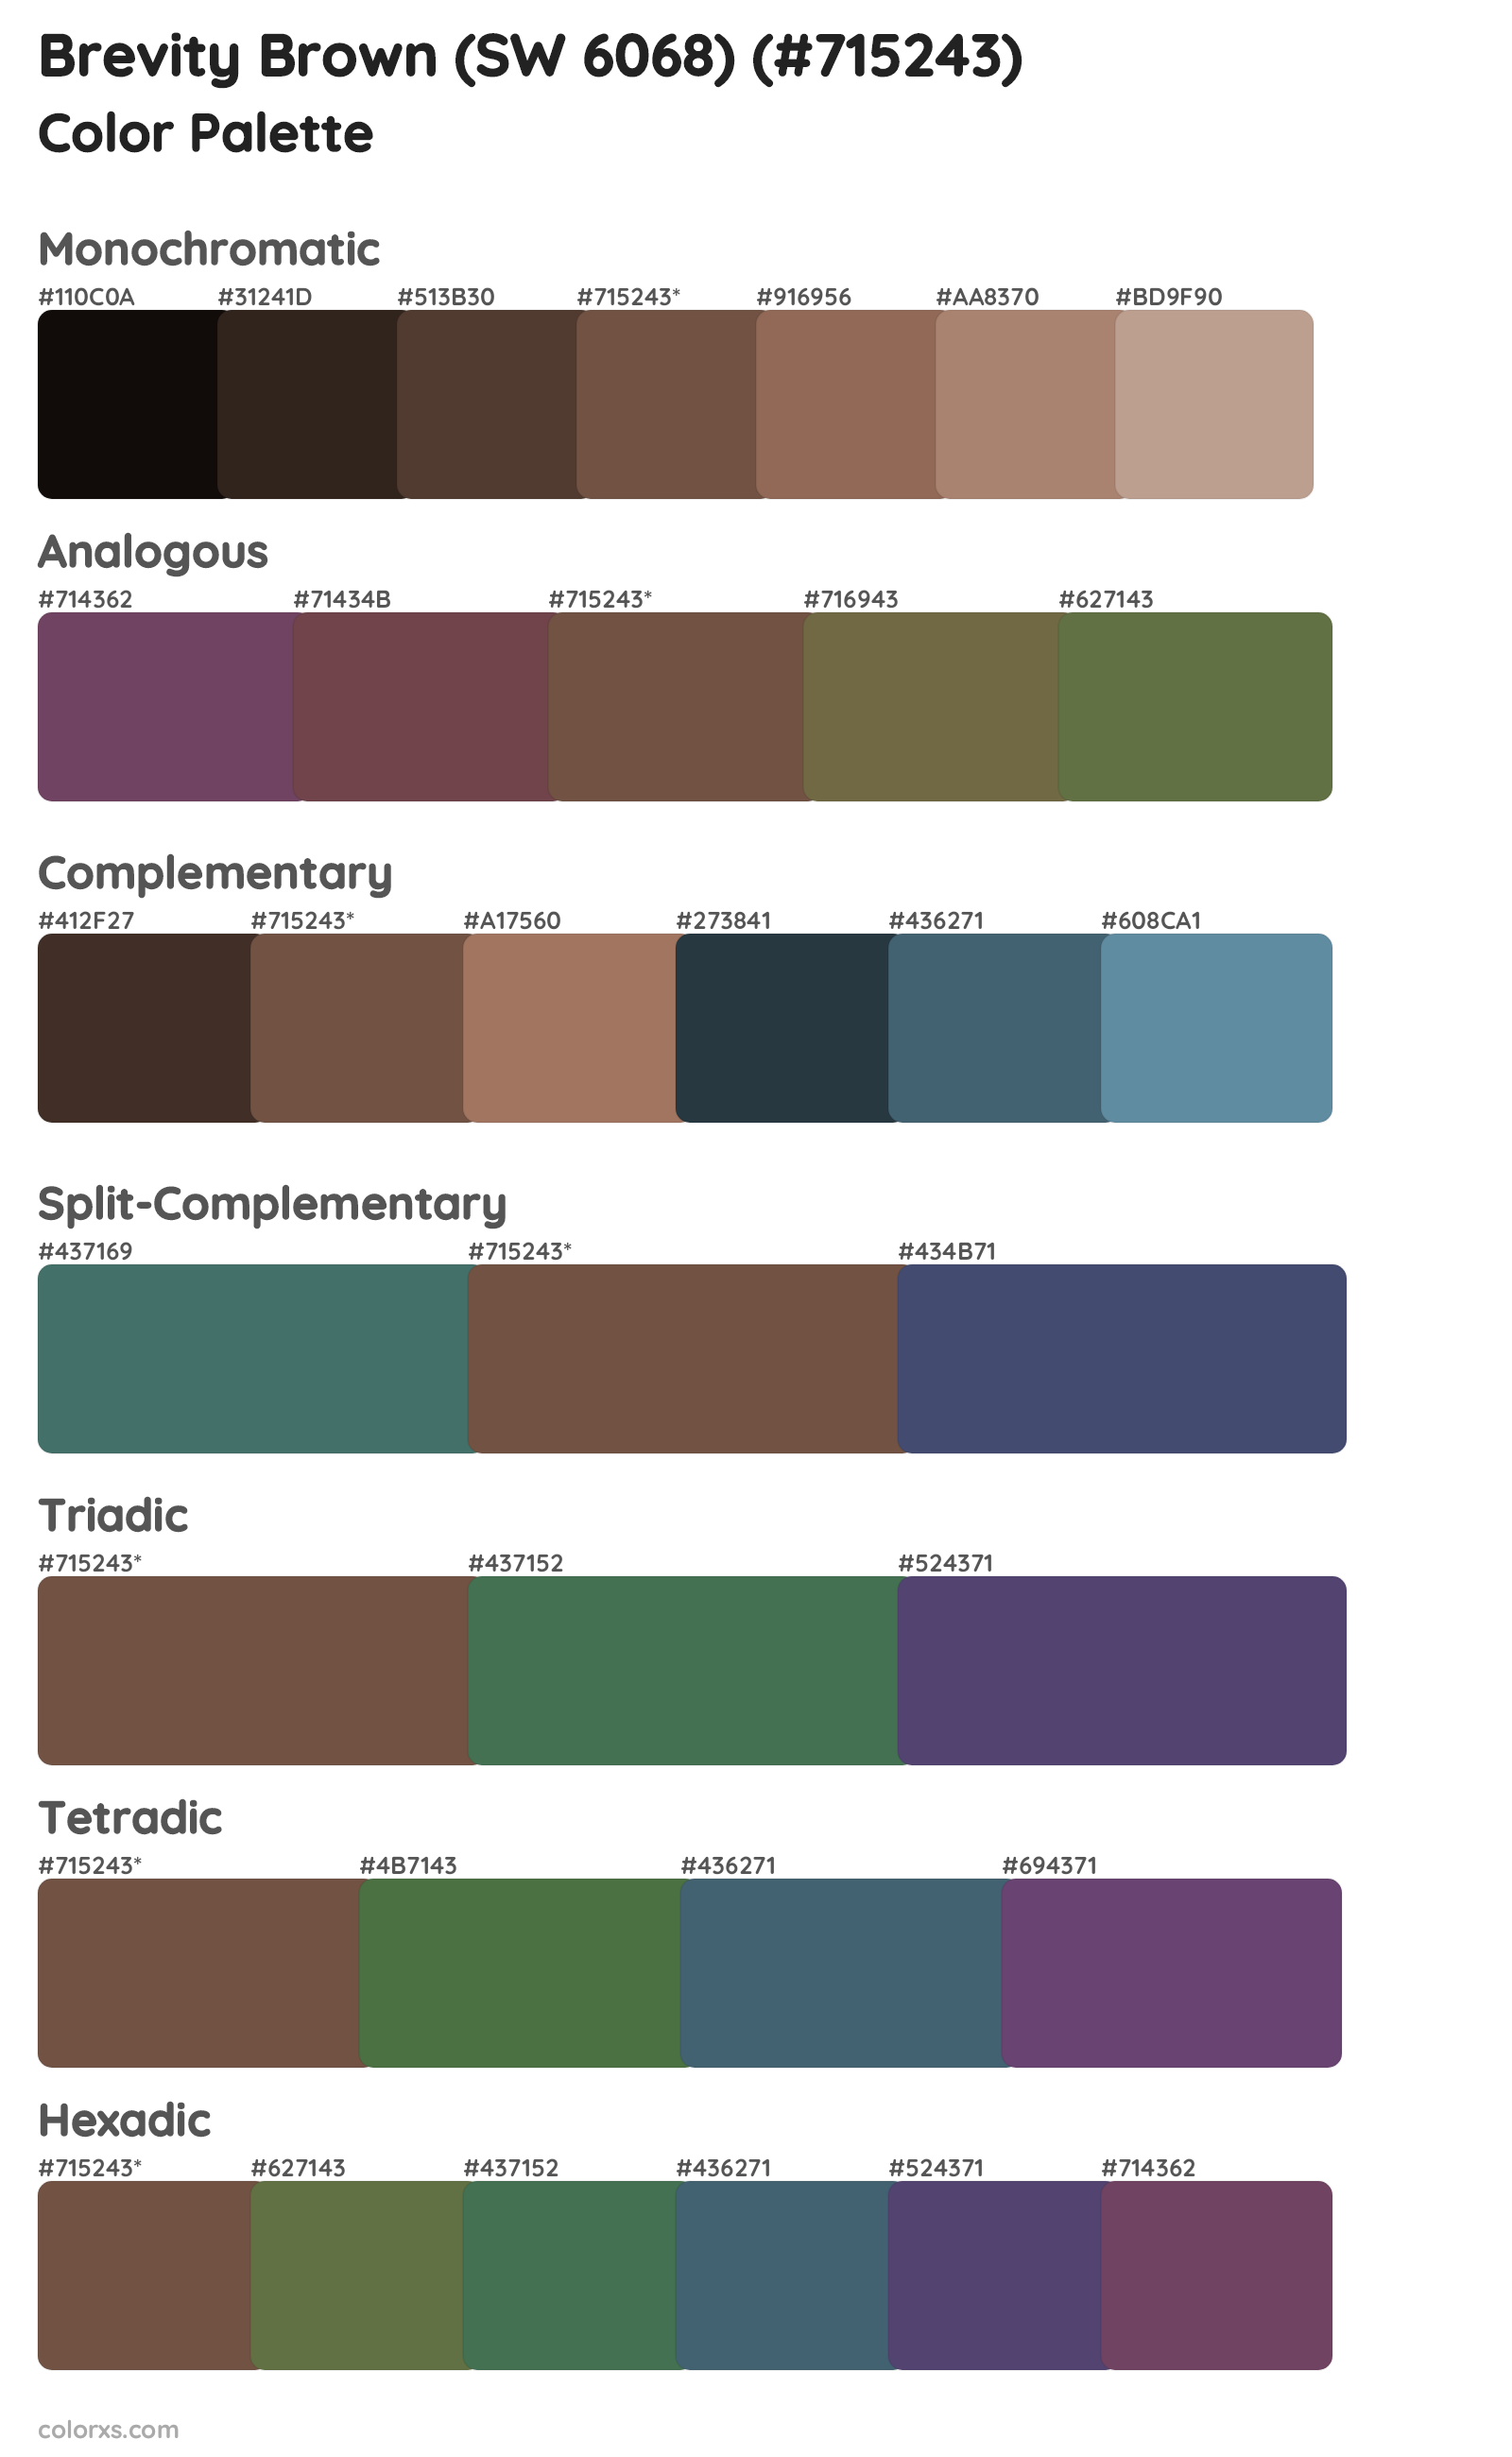 Brevity Brown (SW 6068) Color Scheme Palettes